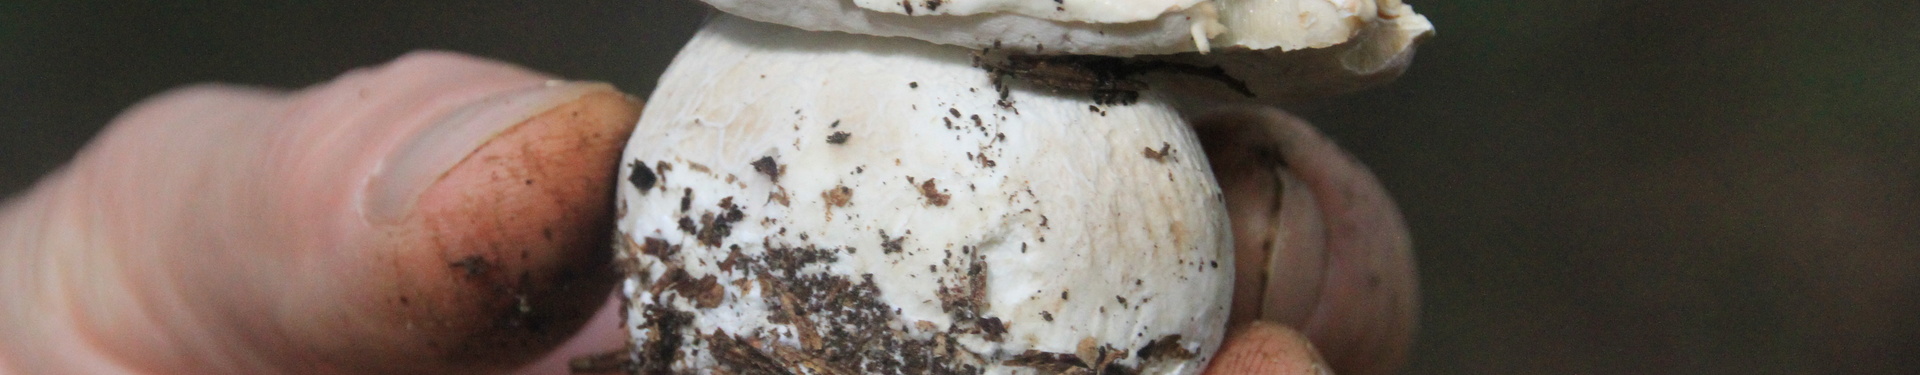 Cueillette des champignons en Livradois | Aluna Voyages